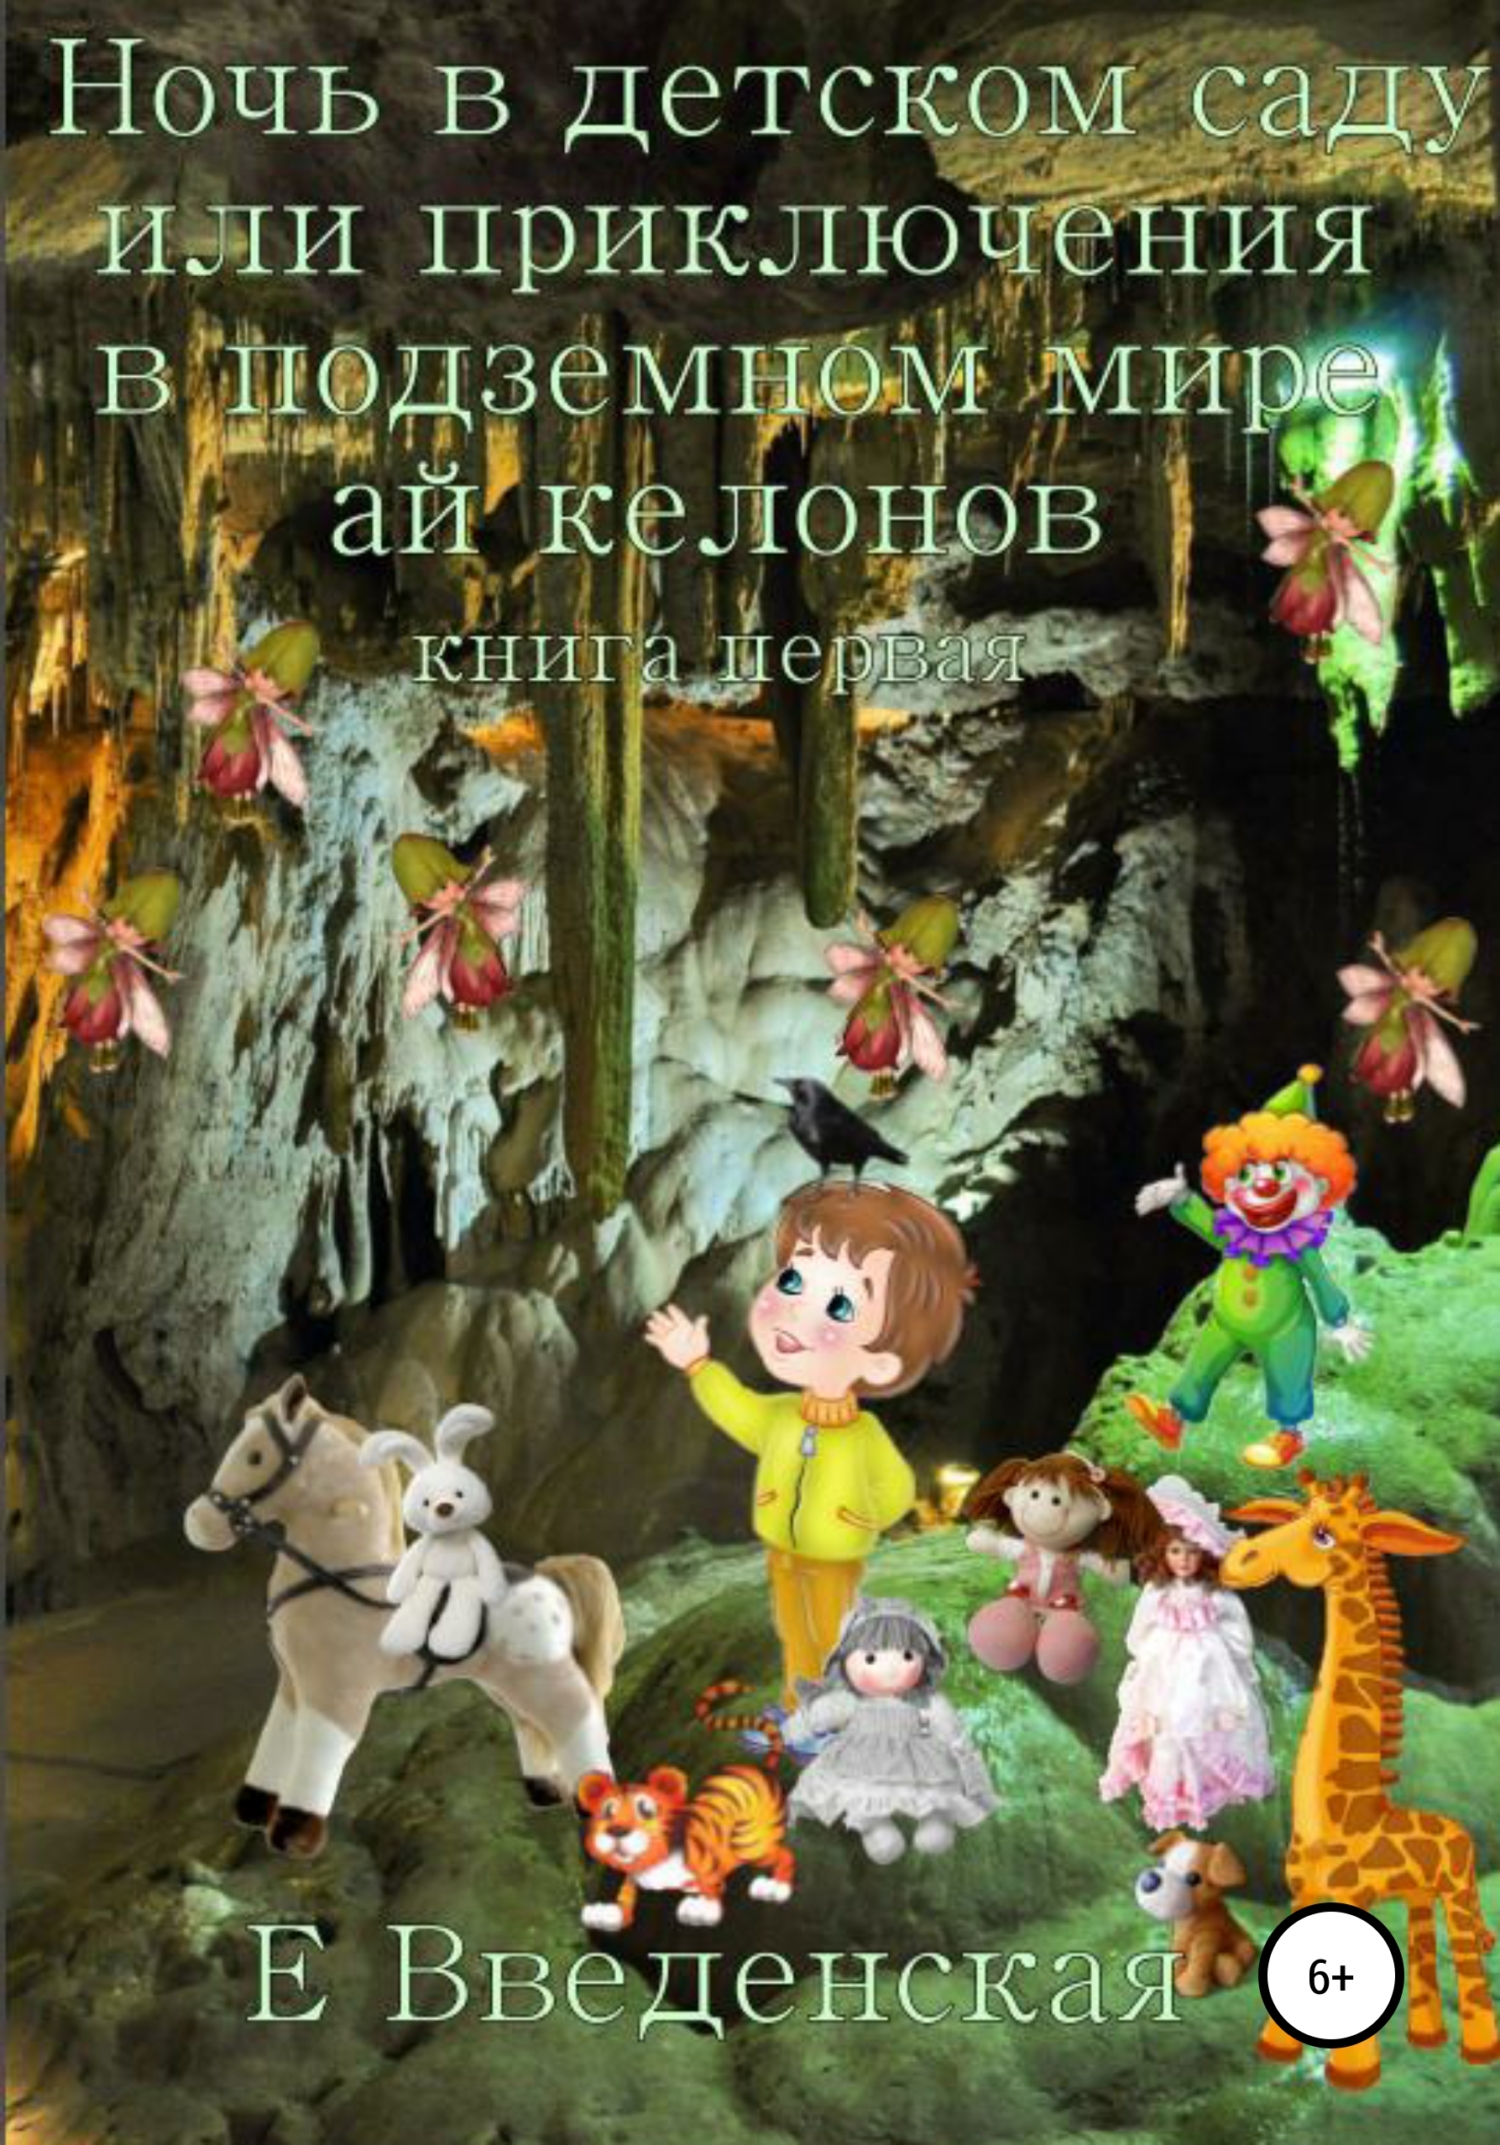 Ночь в детском саду, или Приключения в подземном мире айкелонов. Книга первая (fb2)